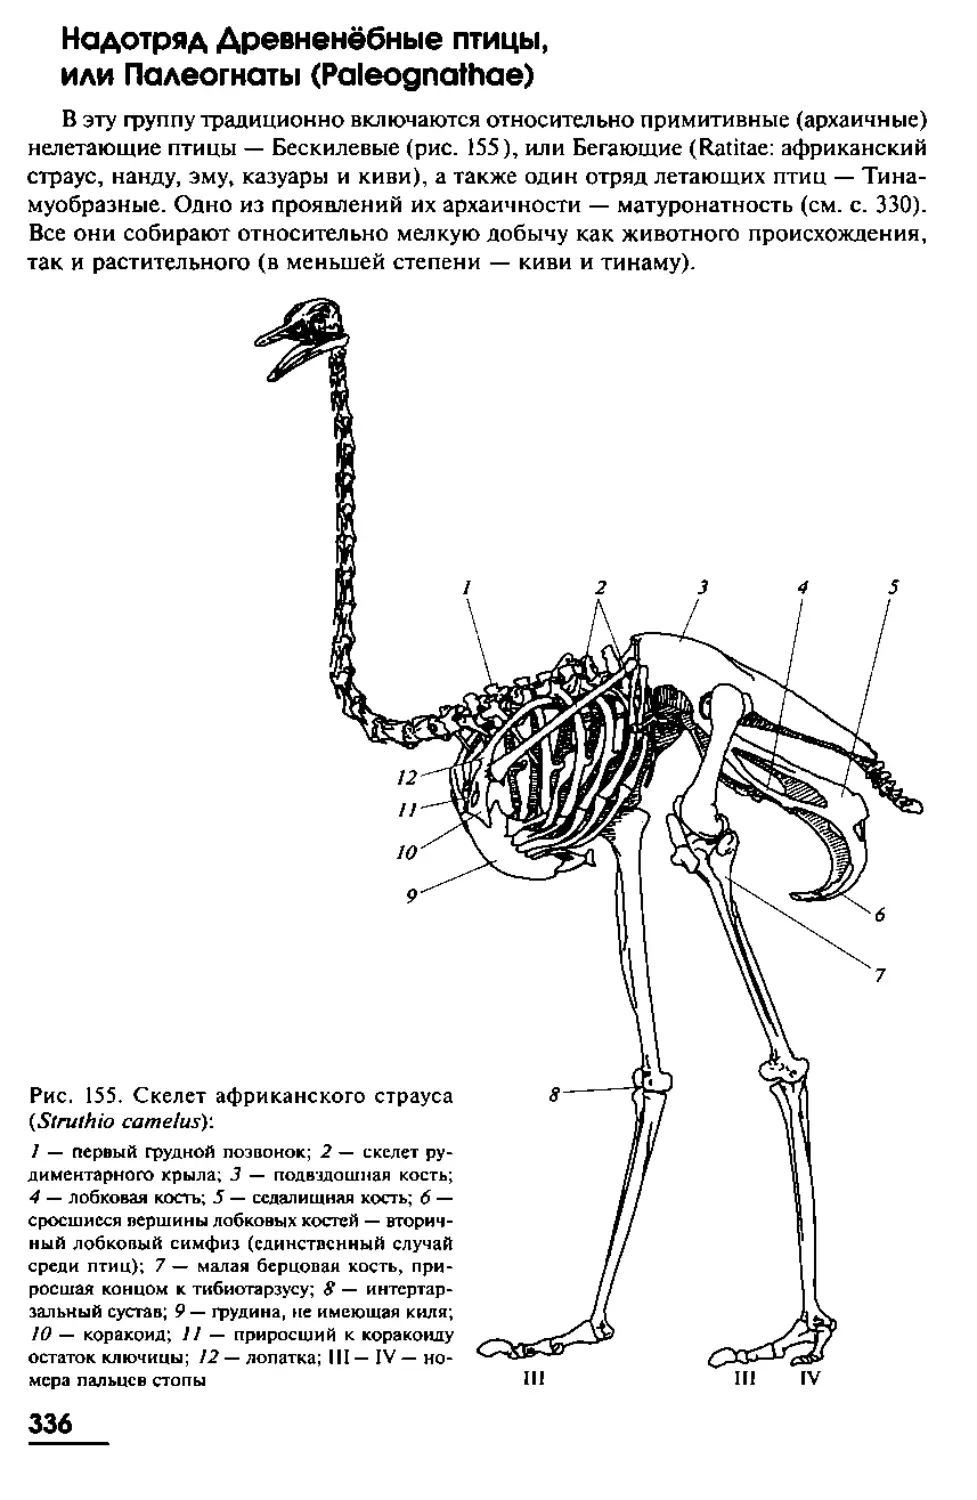 Надотрgд Древненёбные птицы (Paleognalhae)